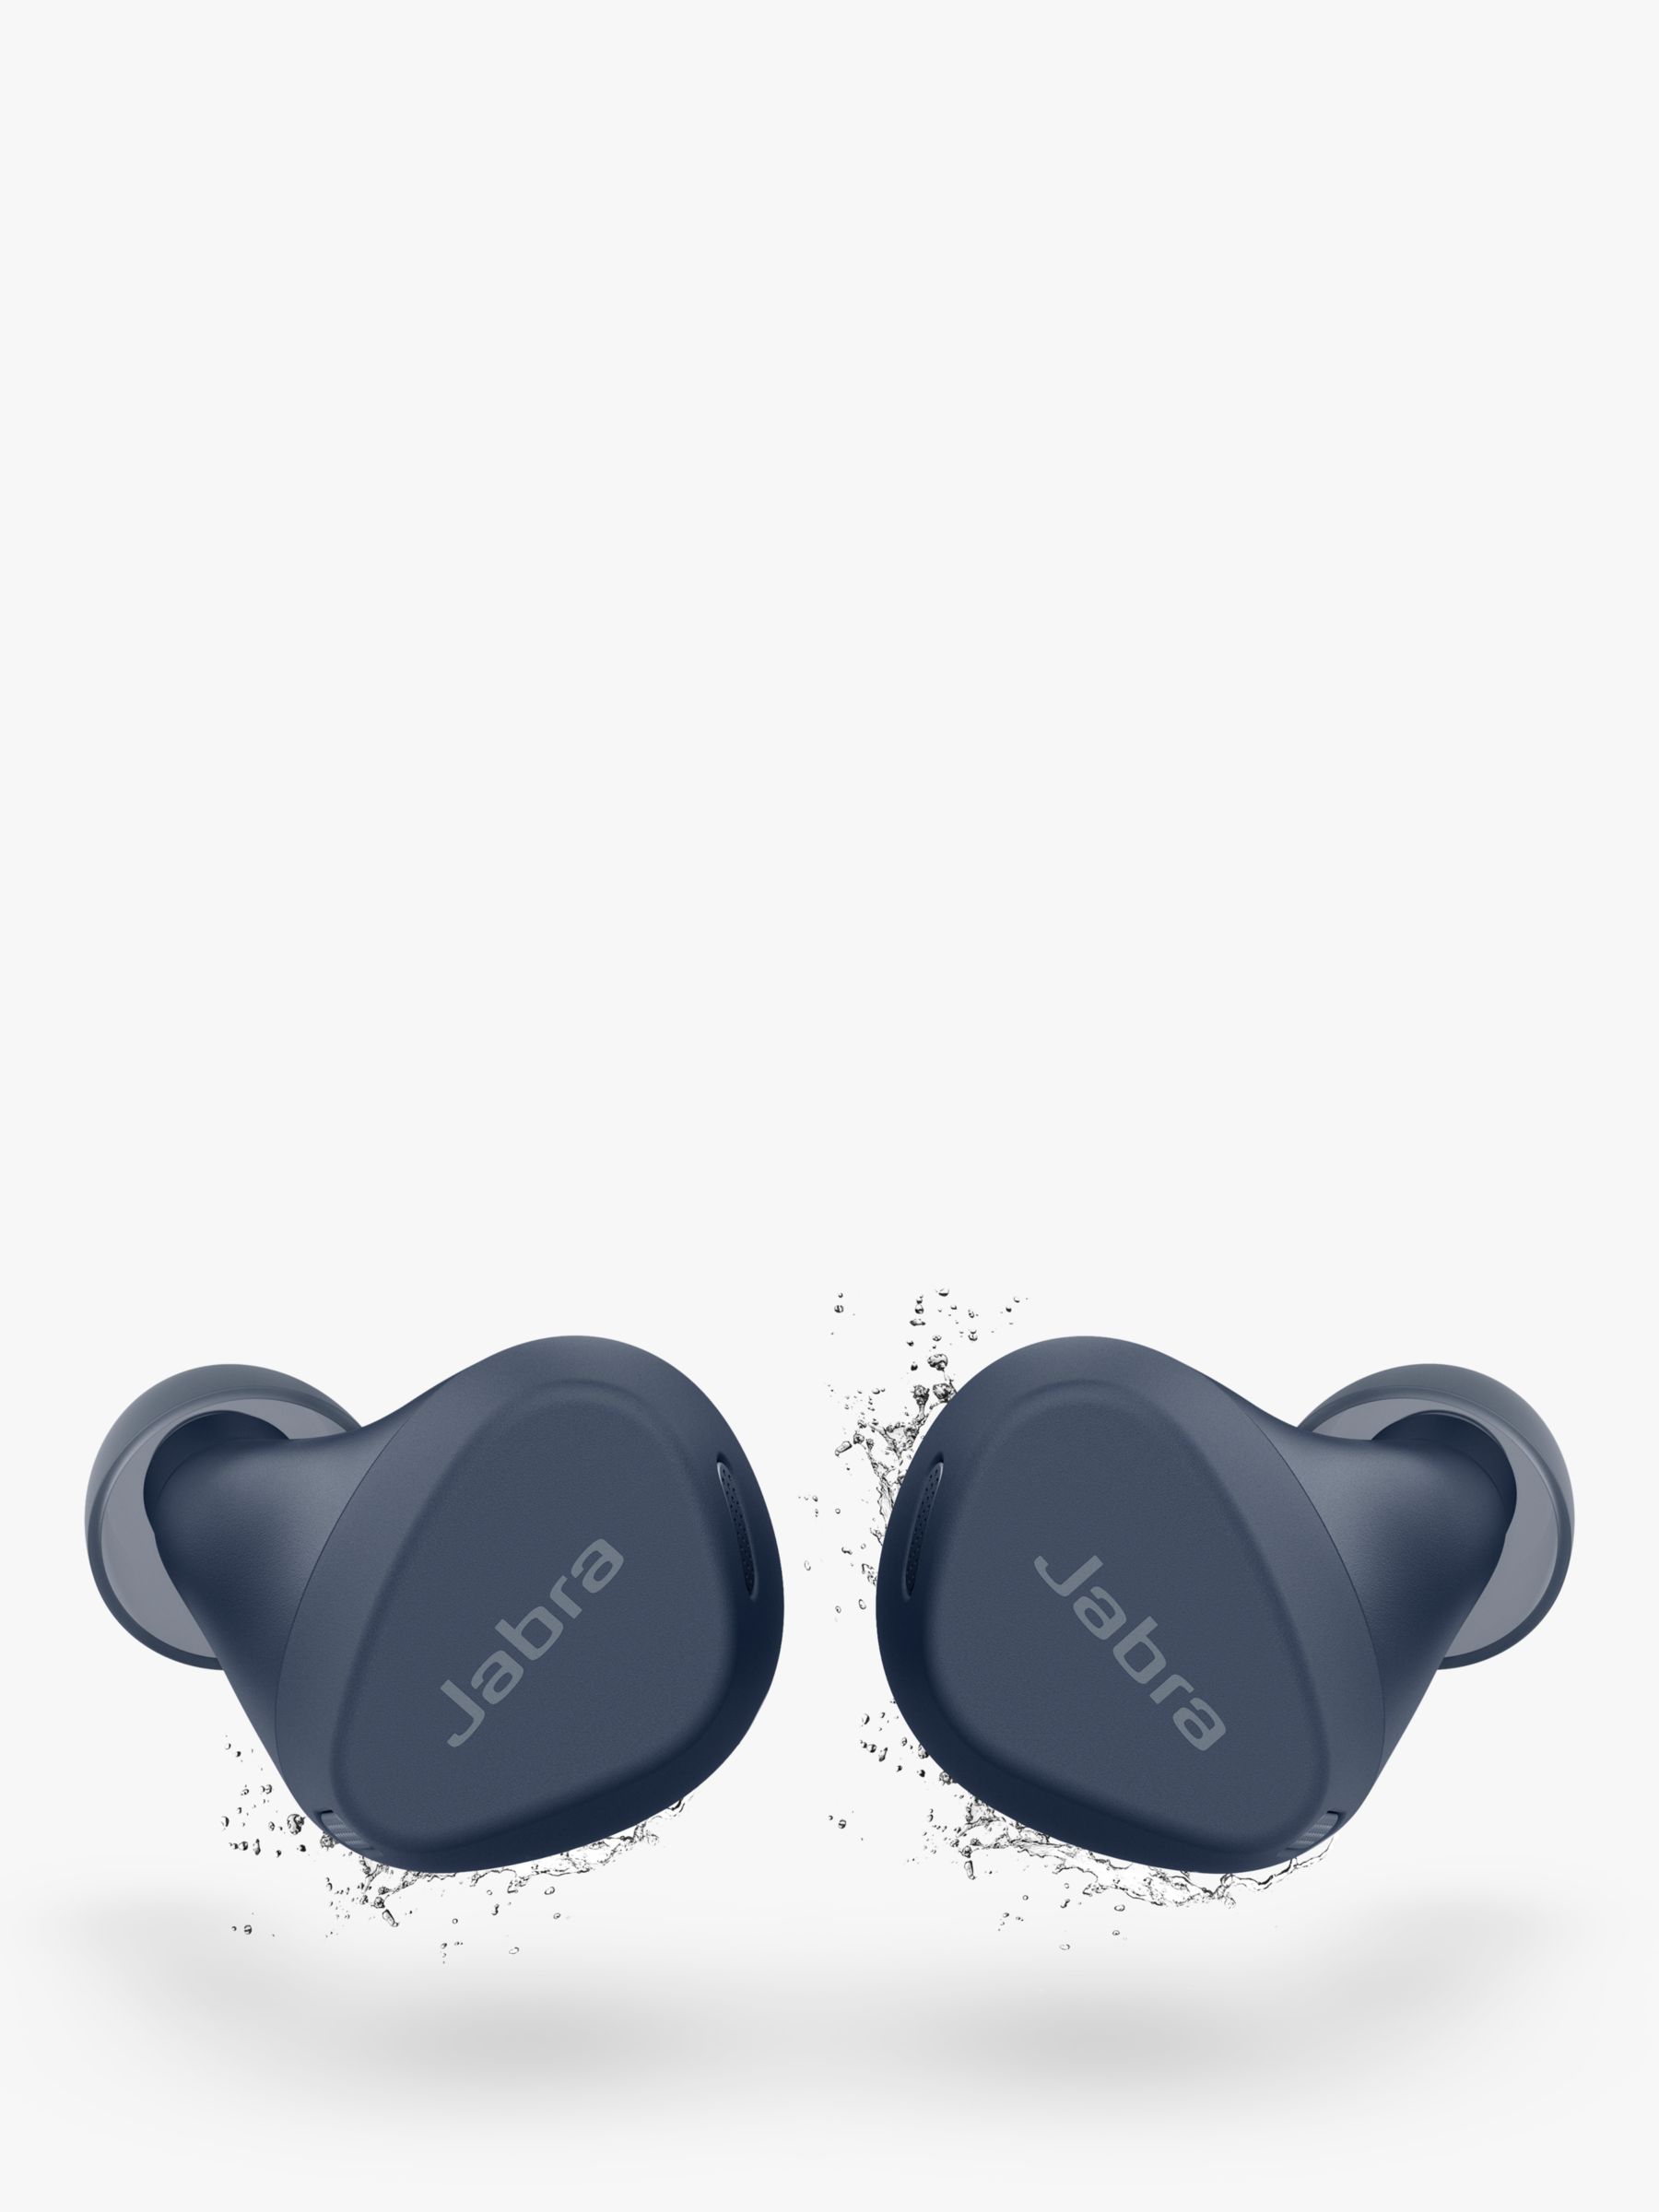 Jabra Elite 7 Pro True Wireless Noise Canceling In-Ear Headphones - Black  for sale online